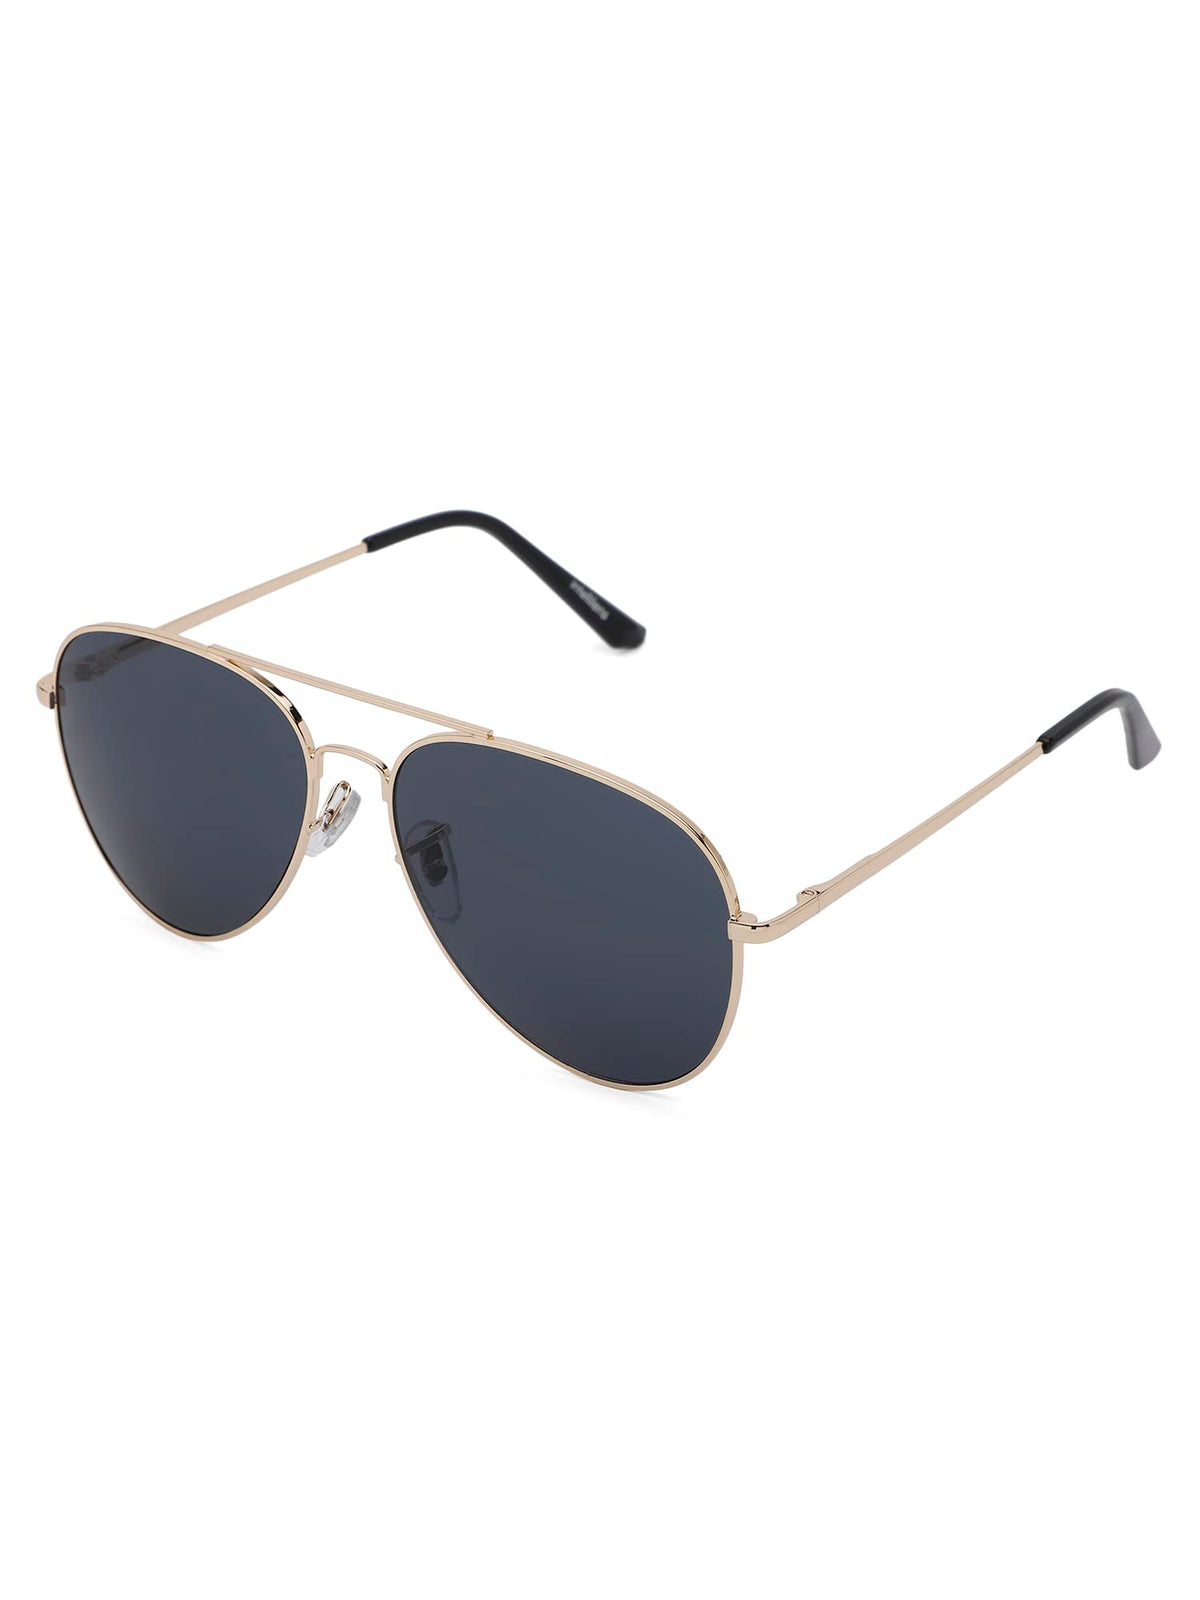 Intellilens Aviator UV Protected Sunglasses For Men & Women | Goggles for Men & Women (Gold & Black) (60-20-145) - Pack of 1